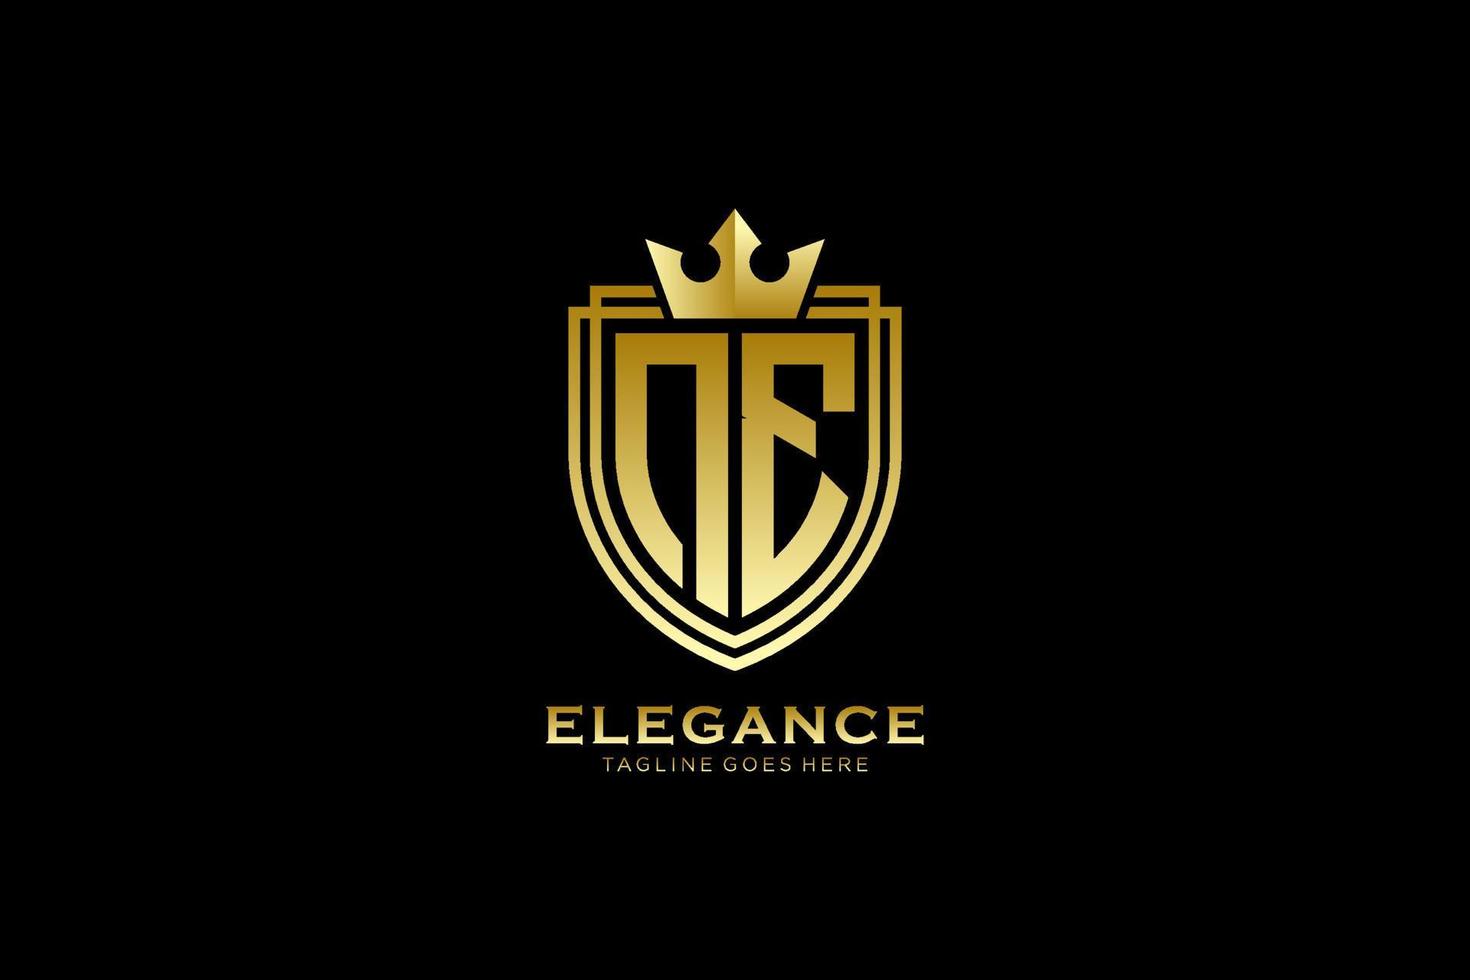 anfängliches elegantes Luxus-Monogramm-Logo oder Abzeichen-Vorlage mit Schriftrollen und königlicher Krone – perfekt für luxuriöse Branding-Projekte vektor